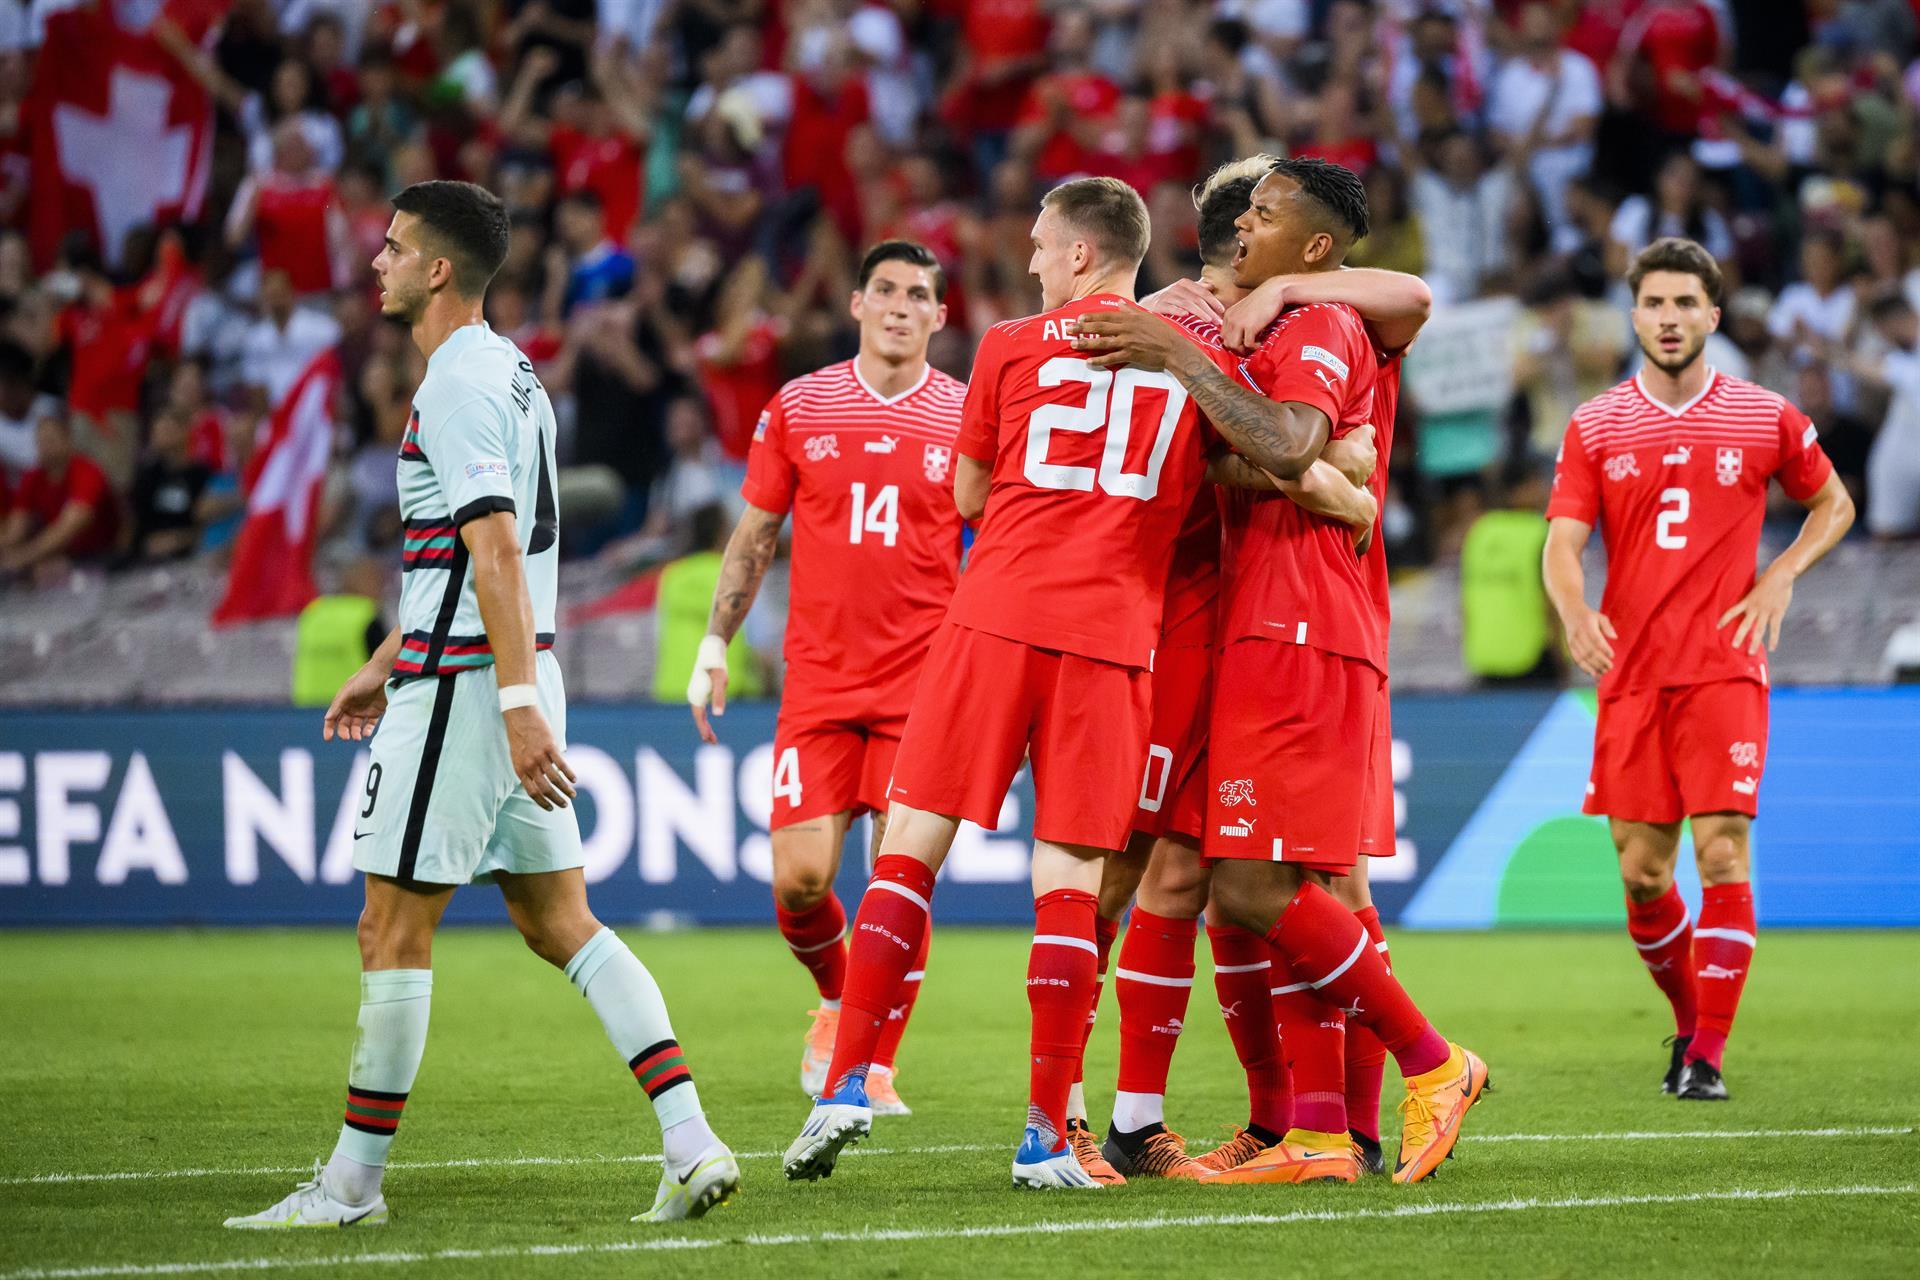 Suiza venció por la mínima diferencia a Portugal. Foto: EFE